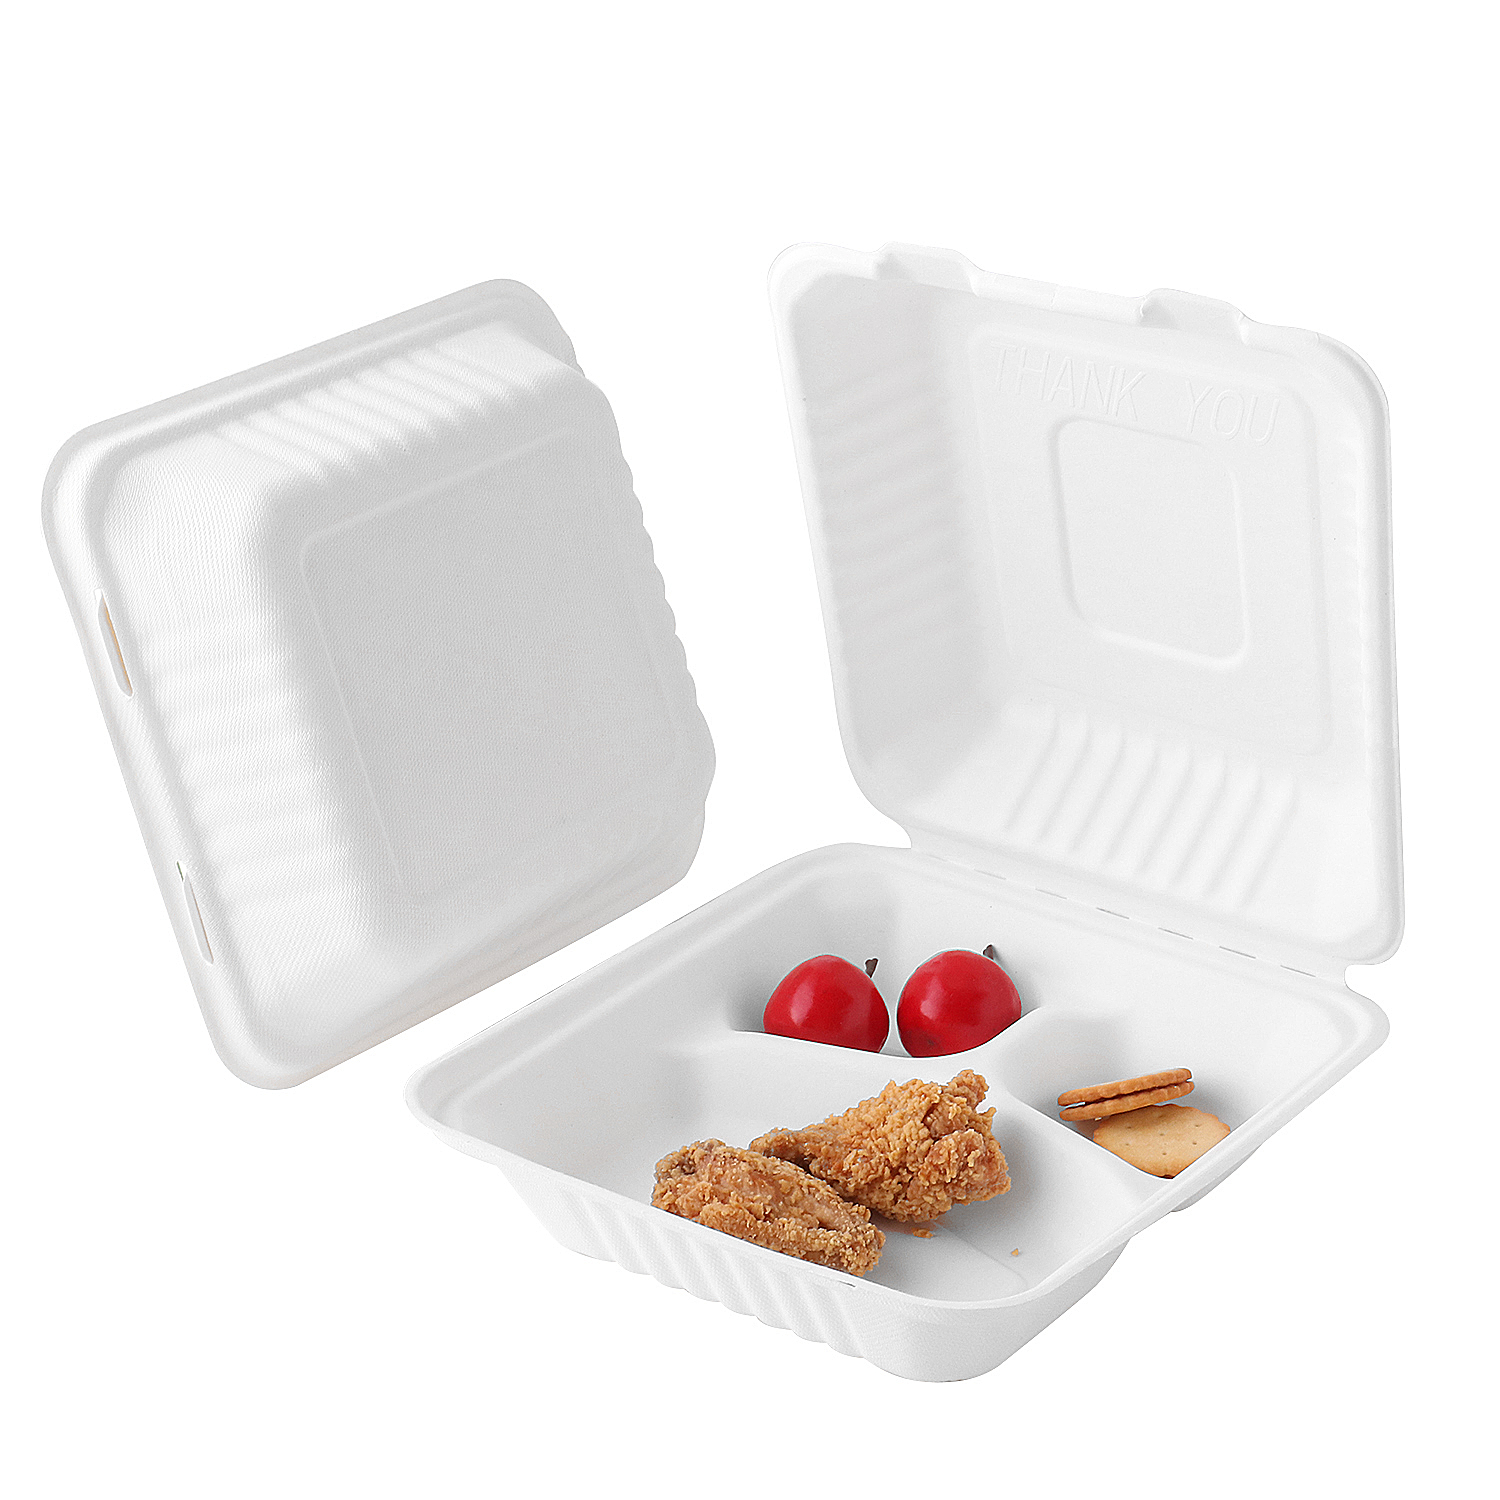 8 "x8 " x3 '' Embalaje de alimentos ecológico Bagasse Caja de concha de 3 compartimentos